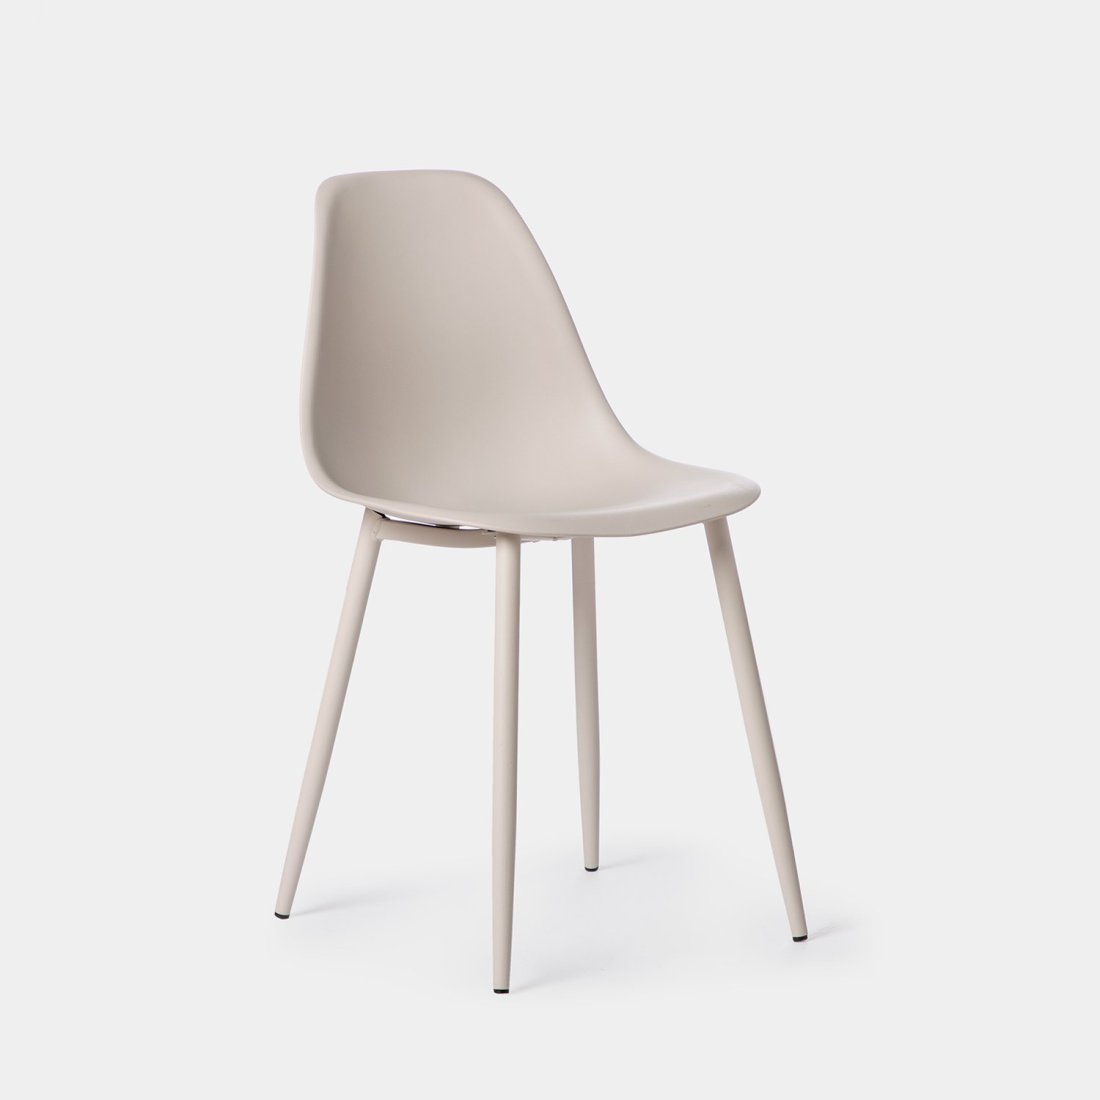 La silla de comedor Nina de líneas armónicas y sencillas combina ligereza y funcionalidad. Está fabricada en polipropileno de alta durabilidad